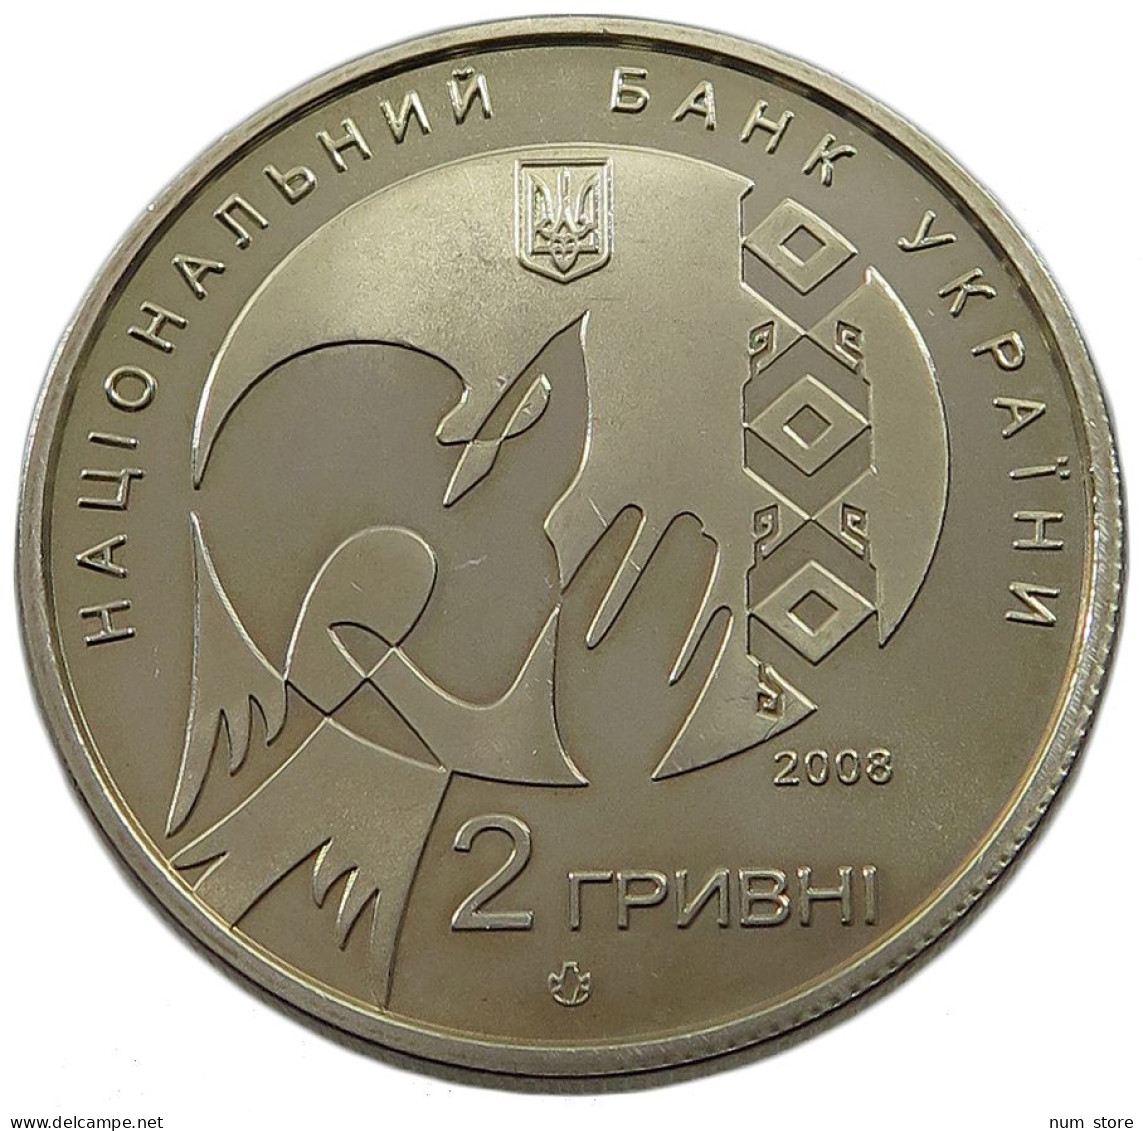 UKRAINE 2 HRYVNI 2008  #w033 0381 - Ukraine